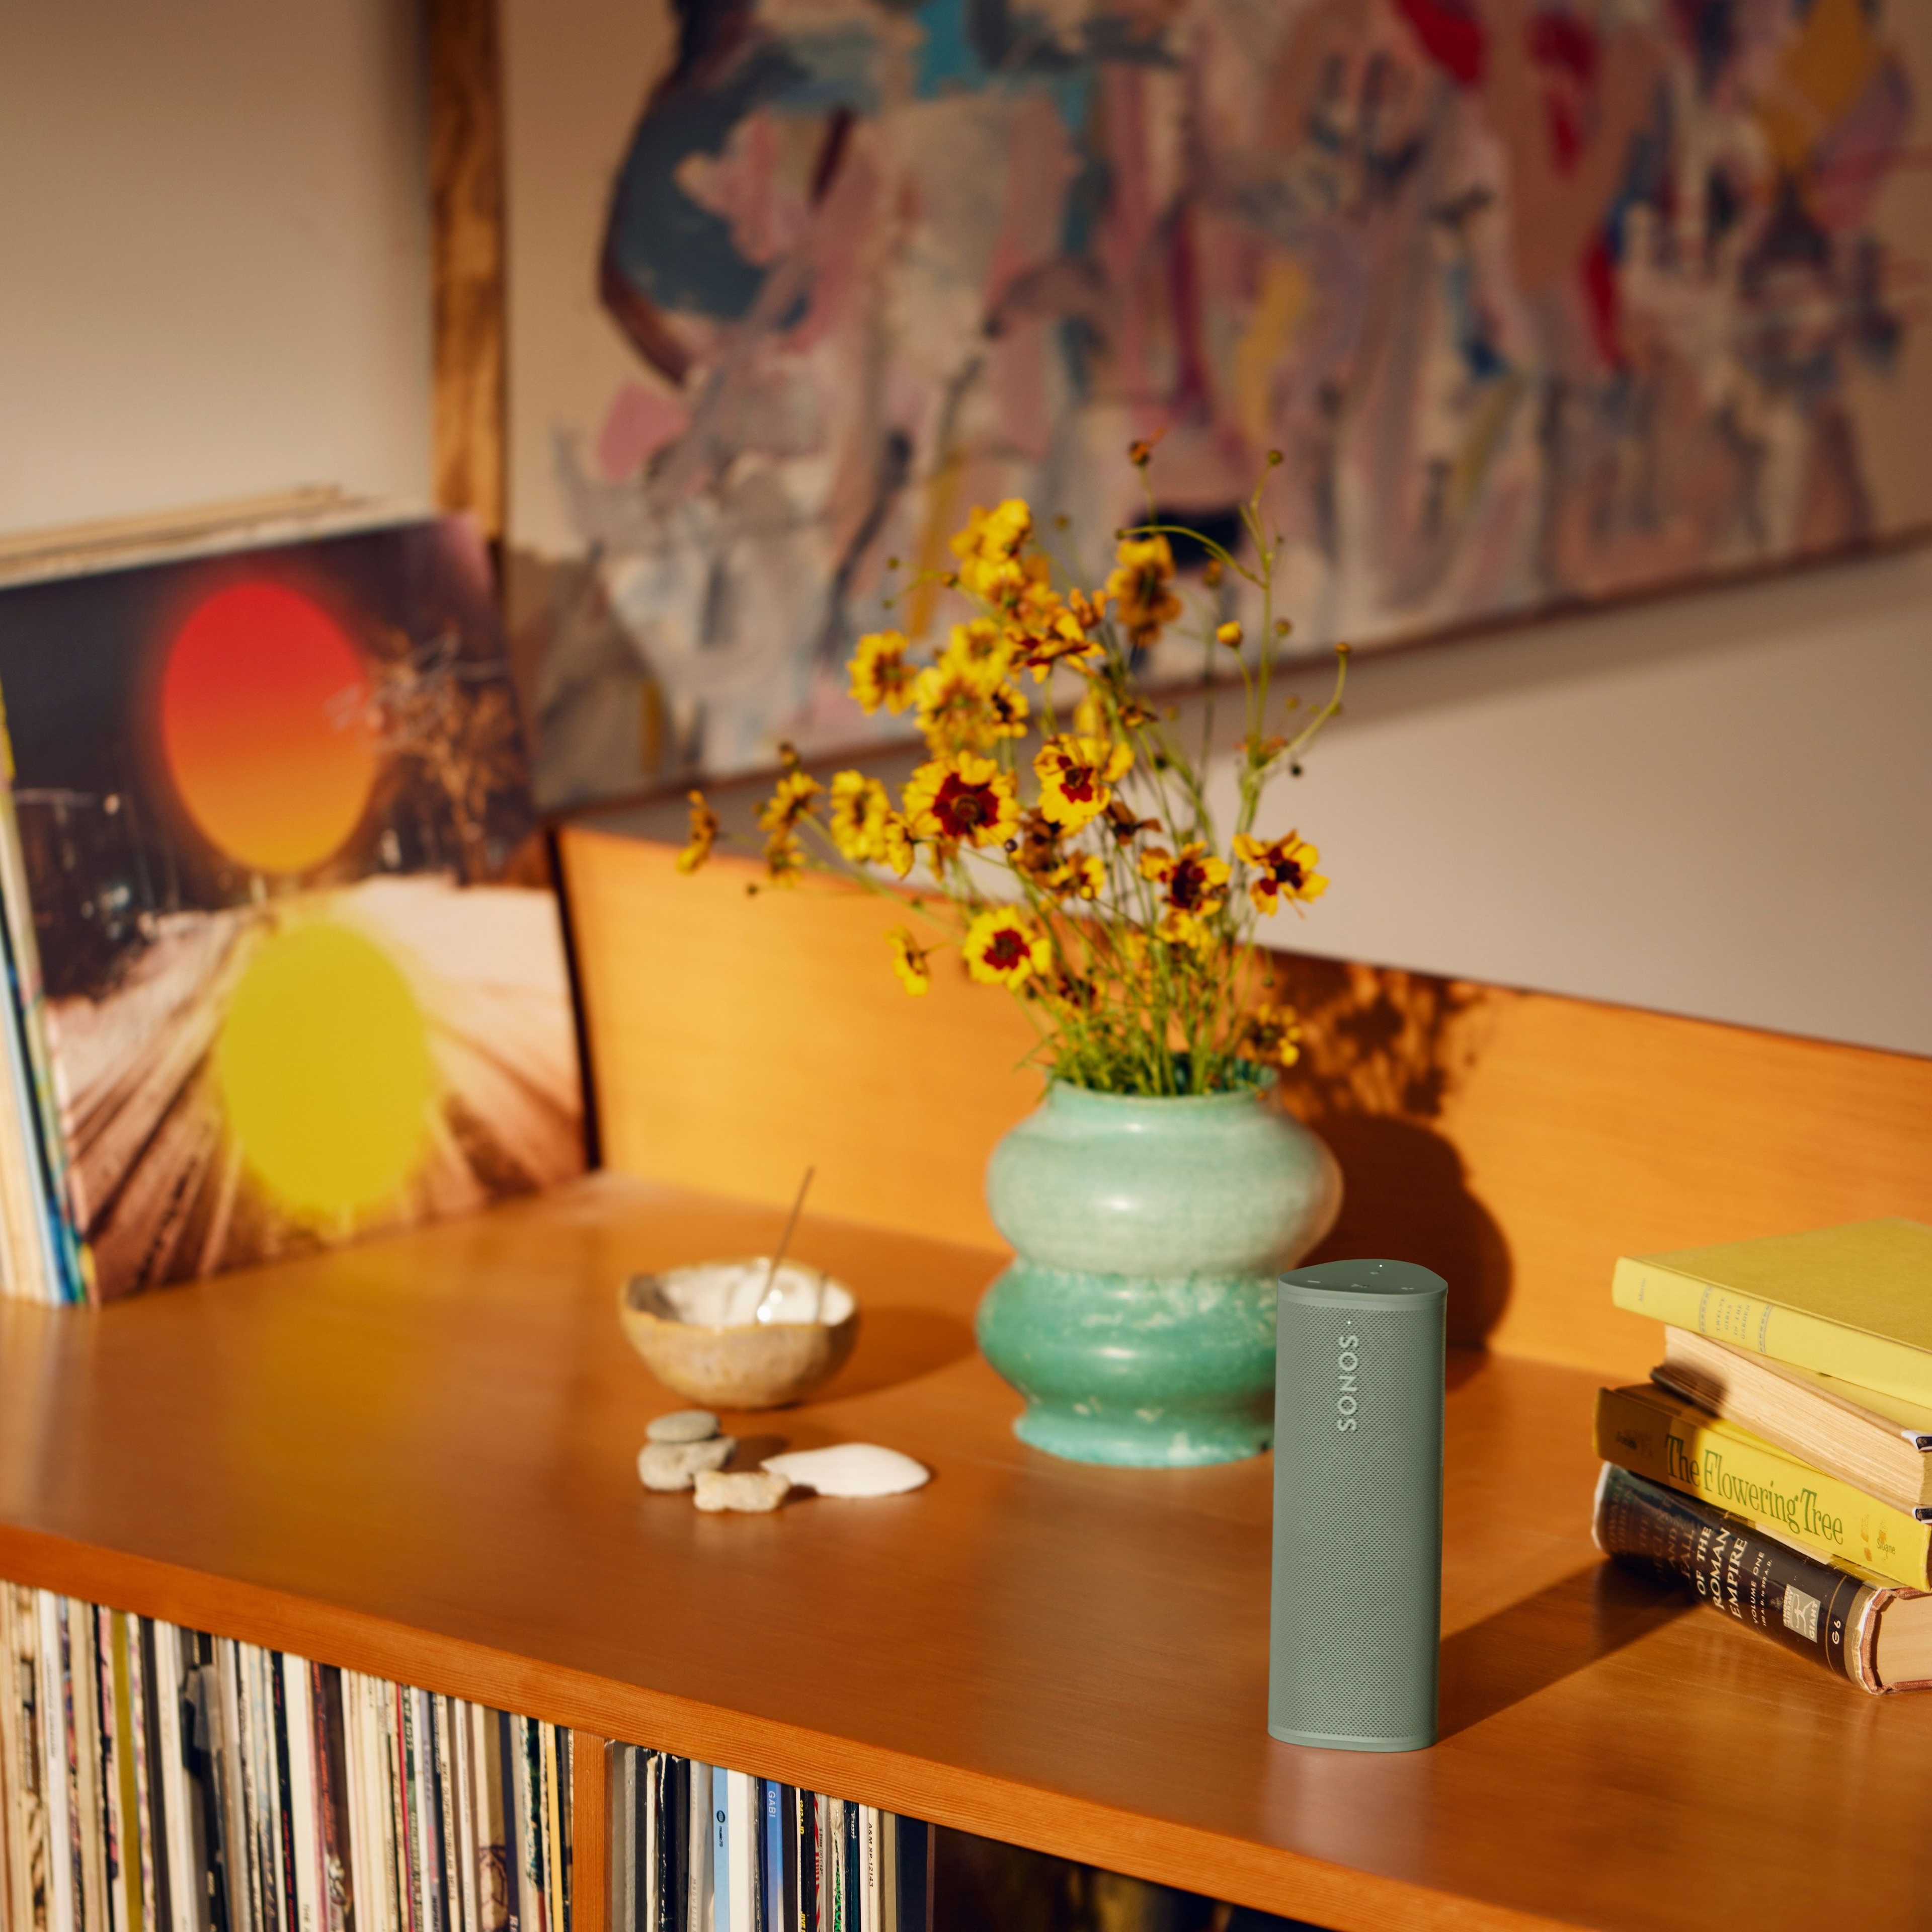 Groene Sonos Roam 2 op een meubel naast een vaas met bloemen en boeken.